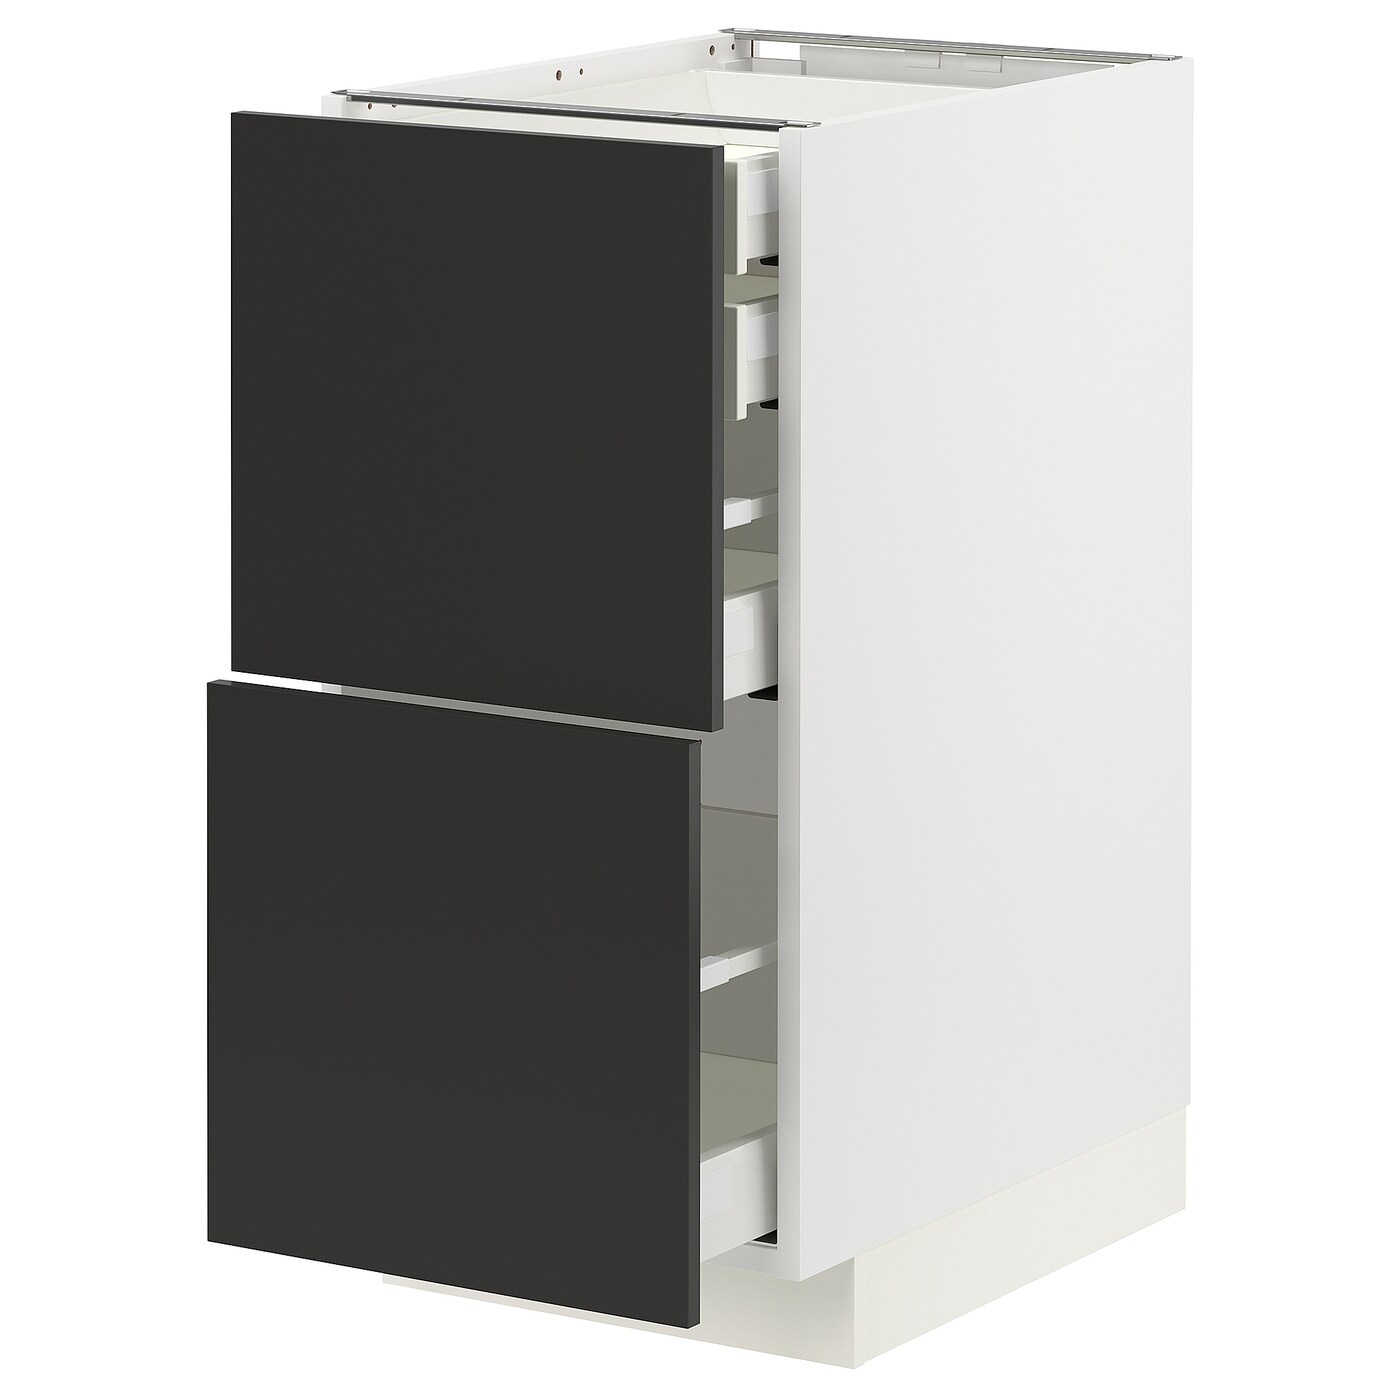 Напольный кухонный шкаф  - IKEA METOD MAXIMERA, 88x62x40см, белый/черный, МЕТОД МАКСИМЕРА ИКЕА